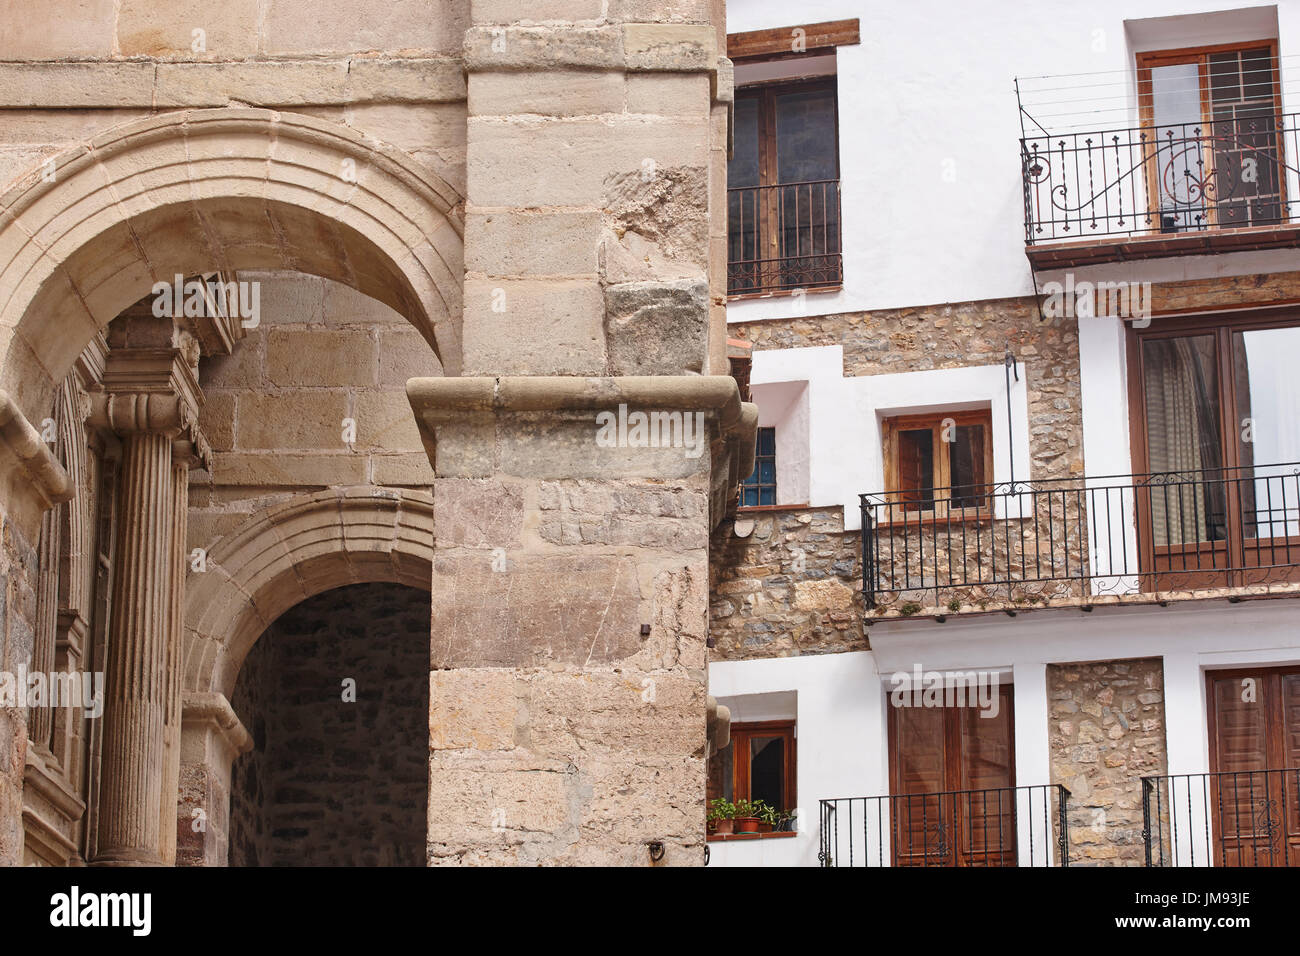 Picturesque village in Spain. Alcala de la Selva. Teruel heritage. Architecture Stock Photo